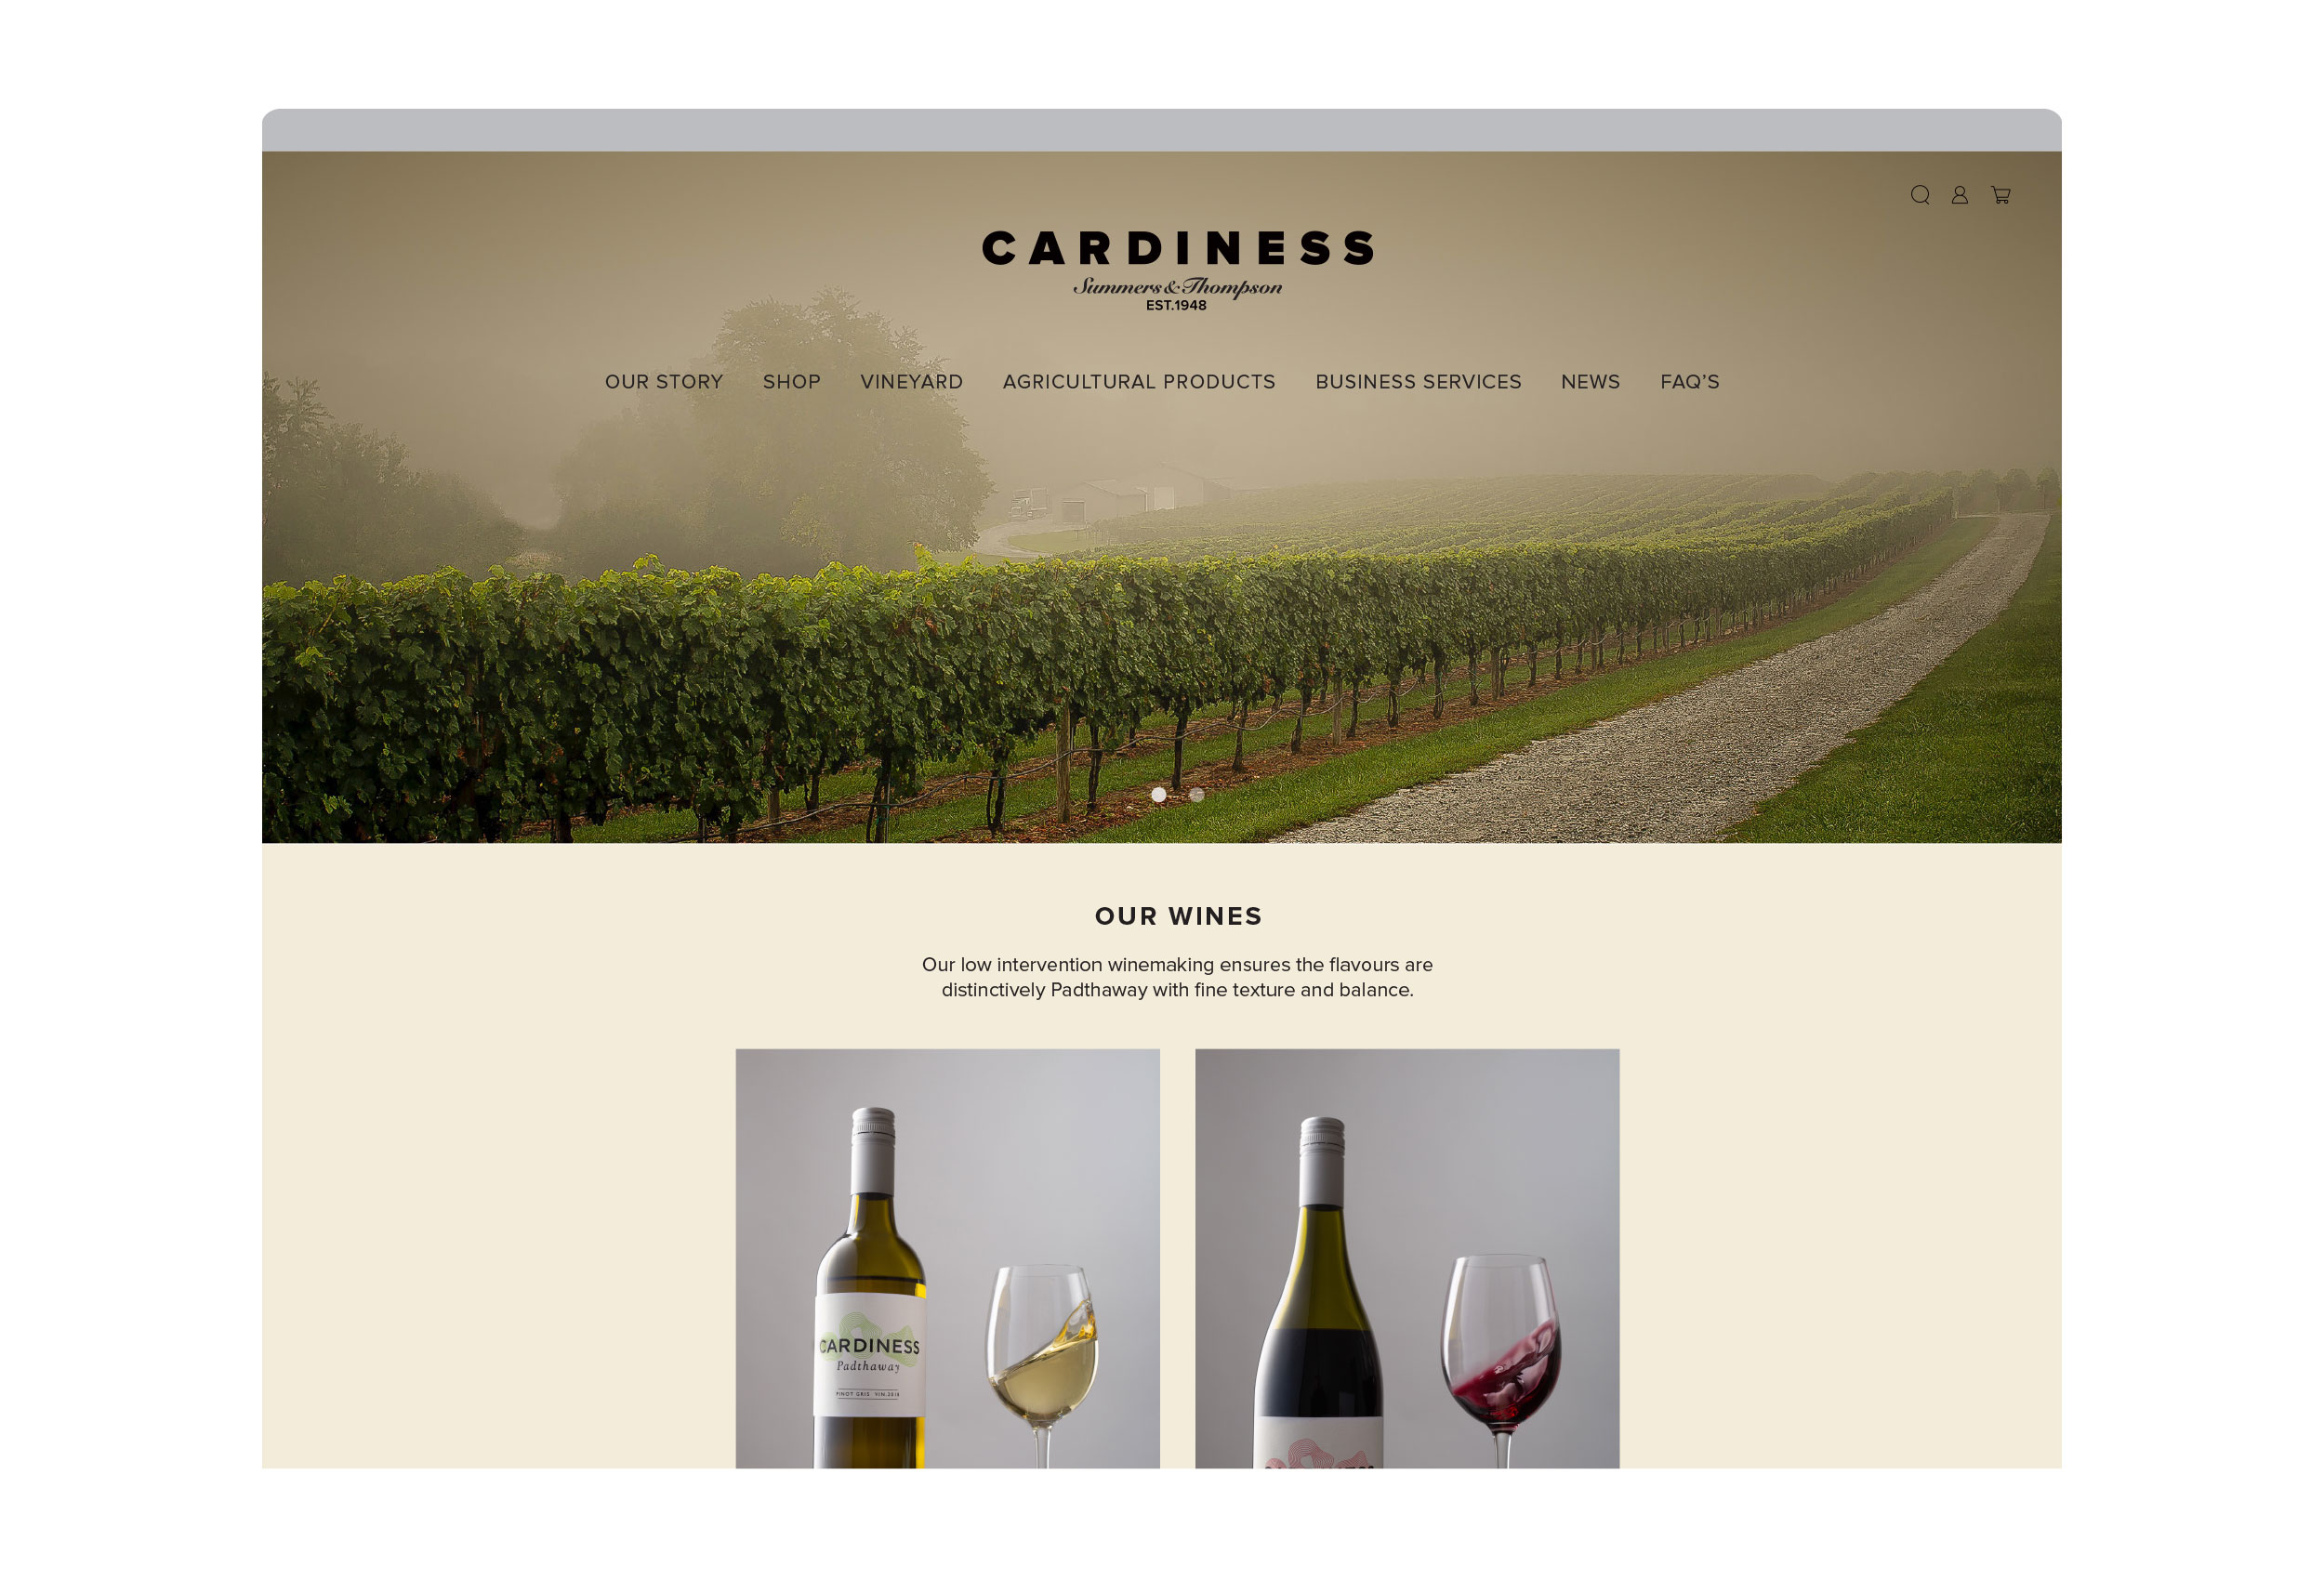 Cardiness digital design website landing page